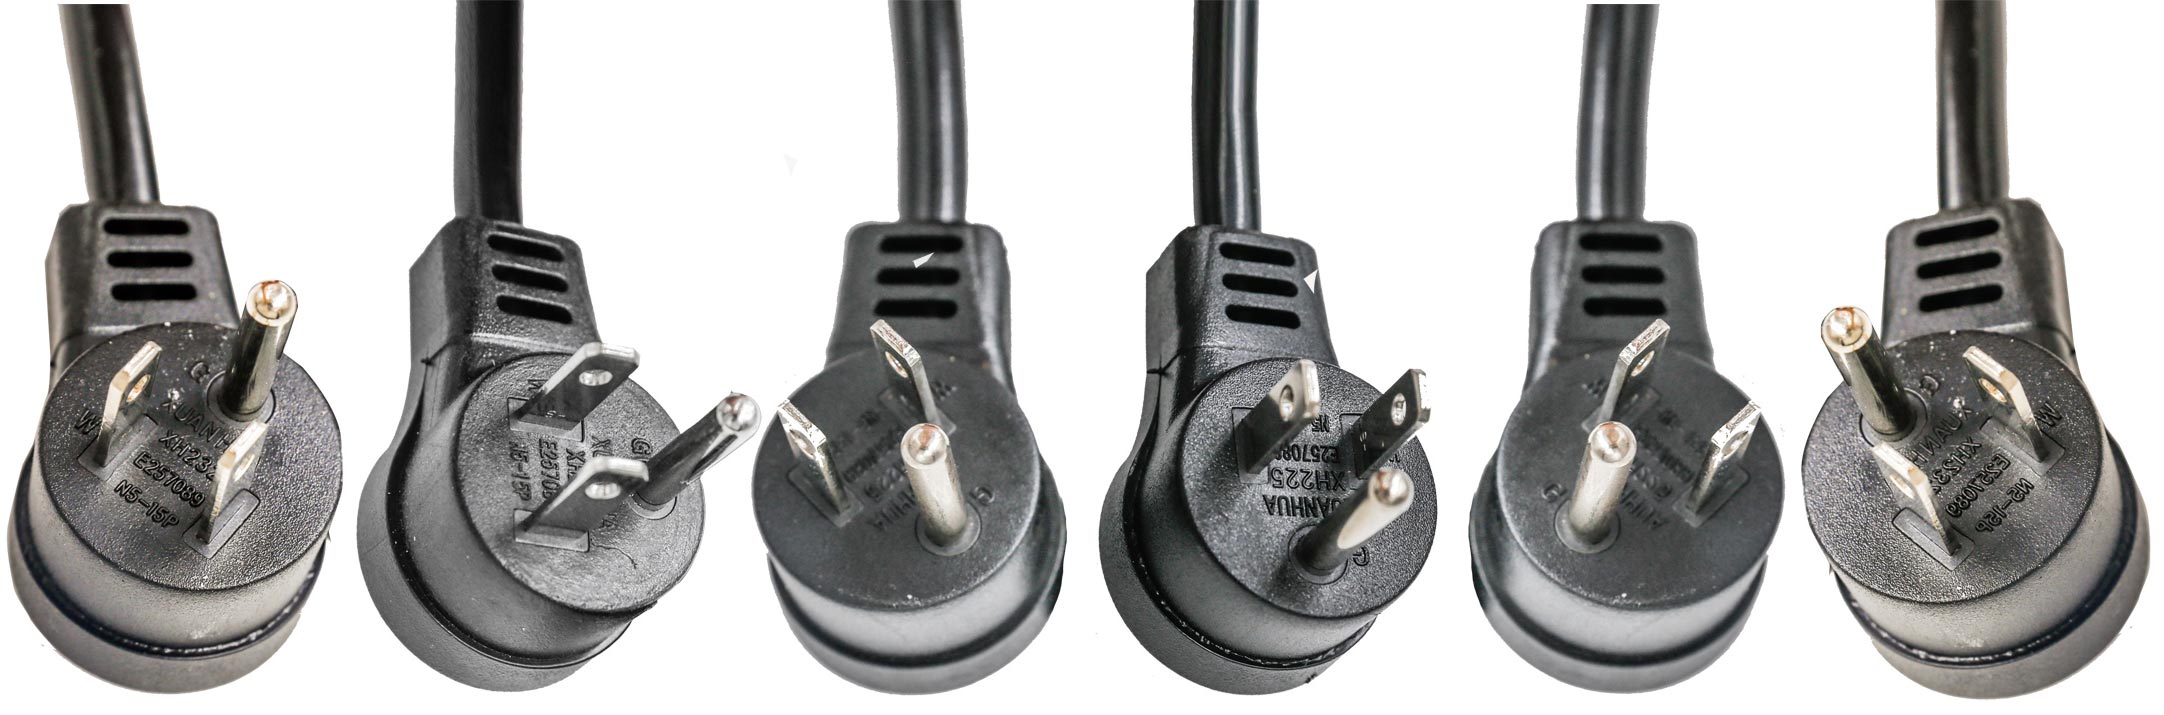 America Canada NEMA 5-15P Right Angle Offset Plug Power Cords